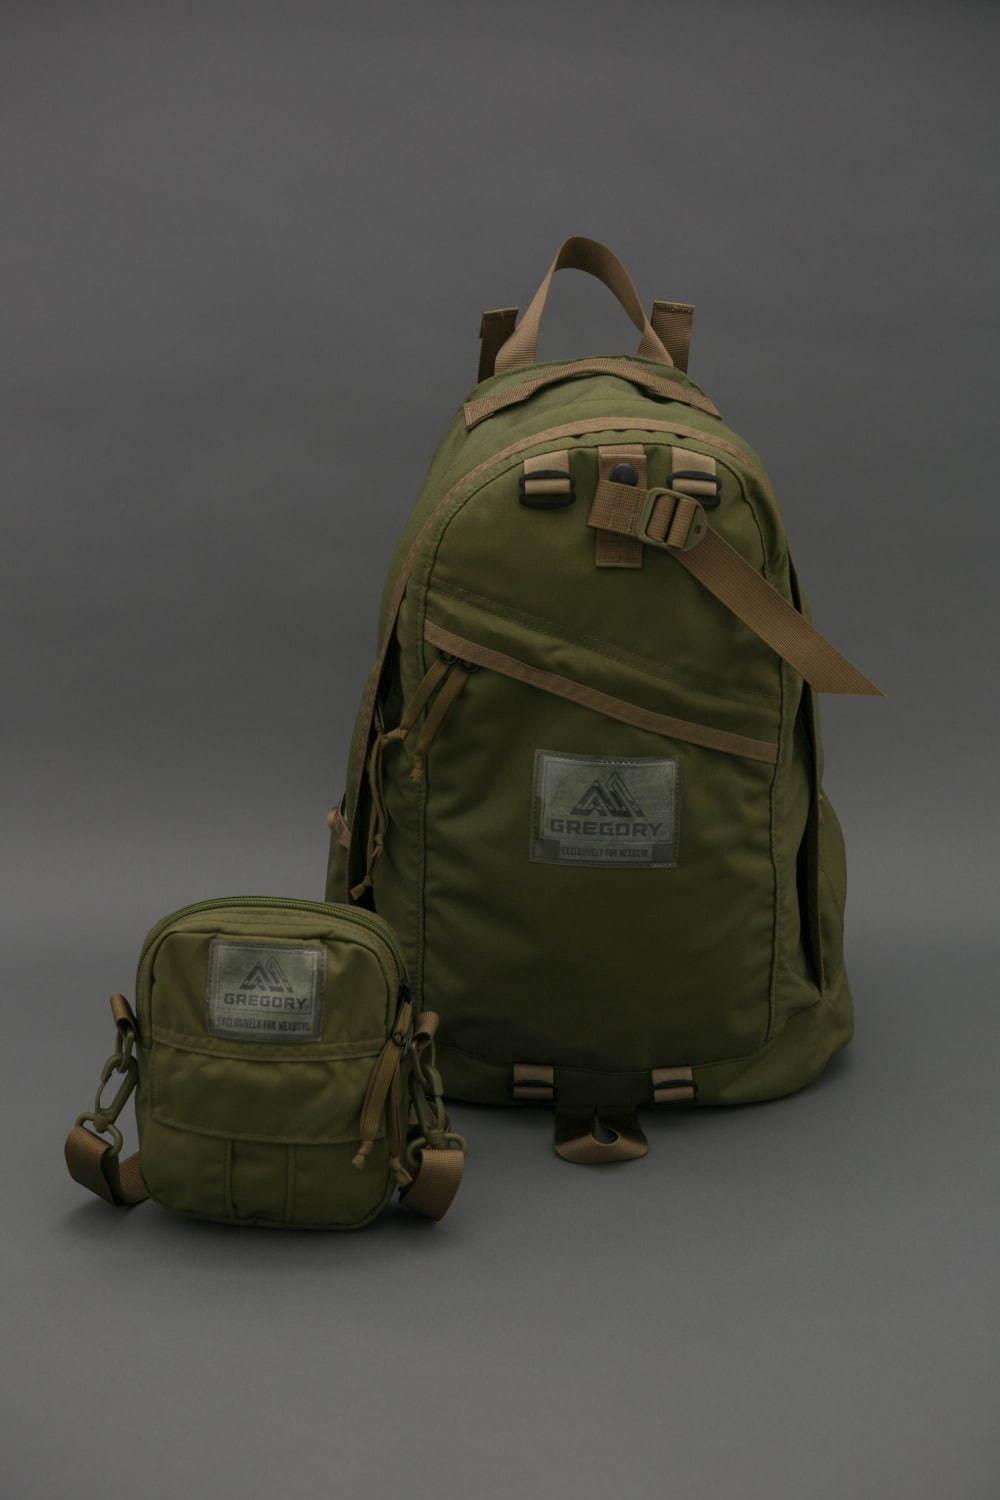 ネクサスセブン×グレゴリー、米軍“アリスパック”着想のミリタリーバッグをアーバンリサーチ限定で コピー